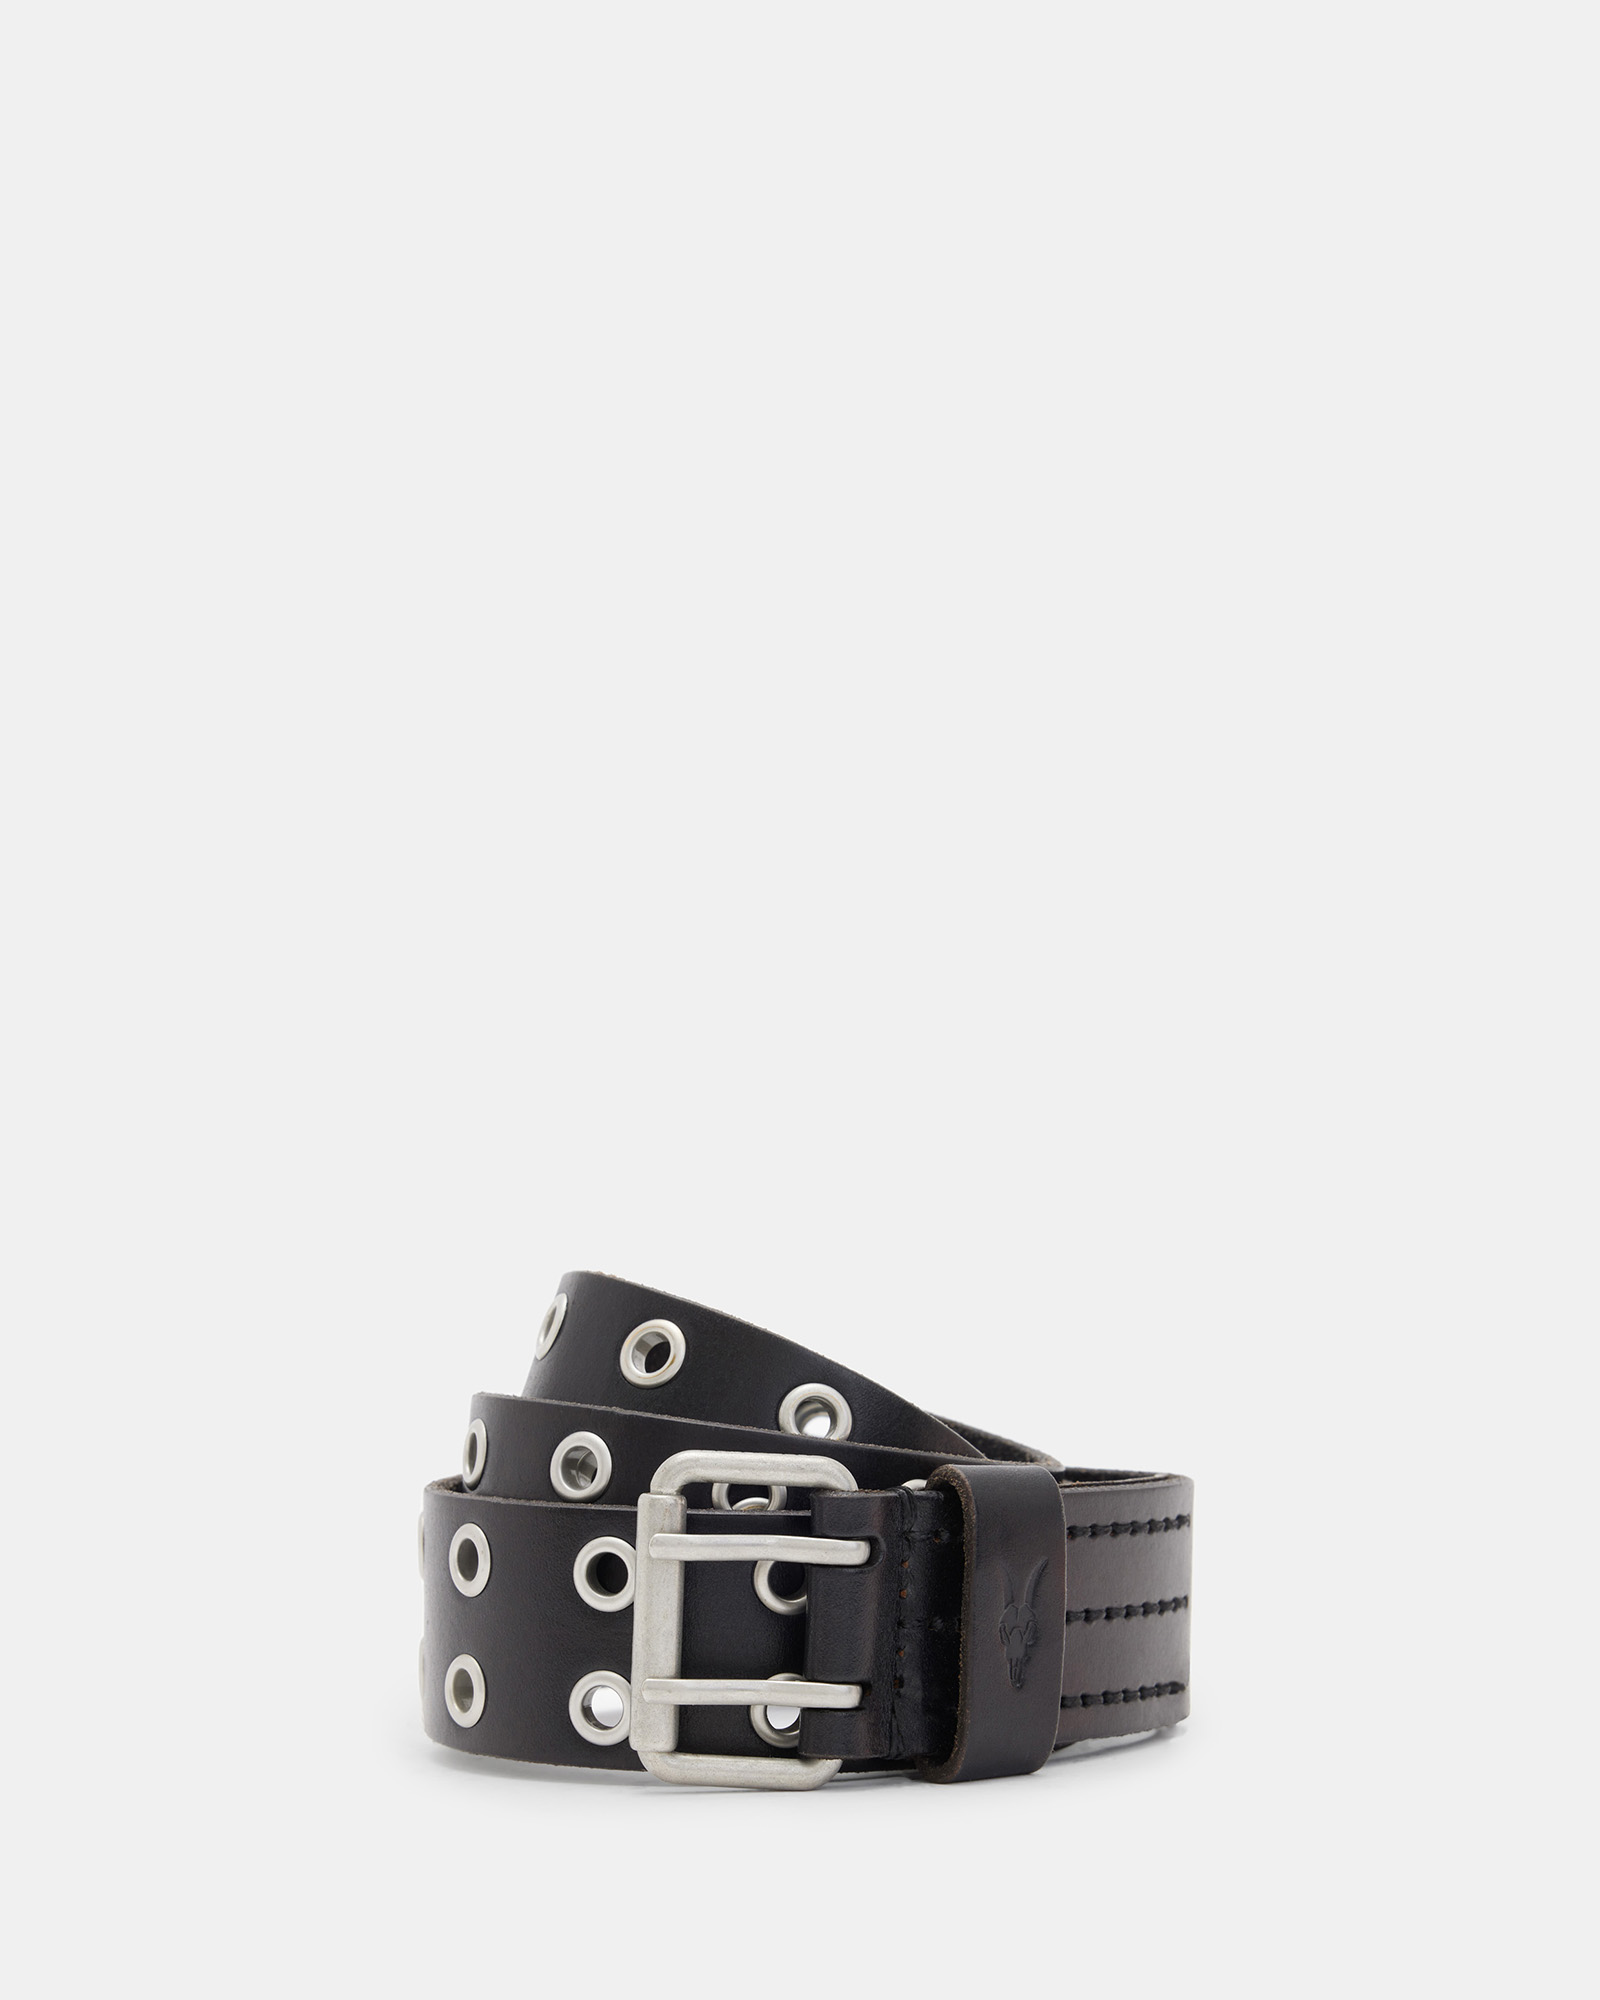 AllSaints Men's Leather Fully Adjustable Sturge Hip Belt with Roller Buckle, Black, Size: 34